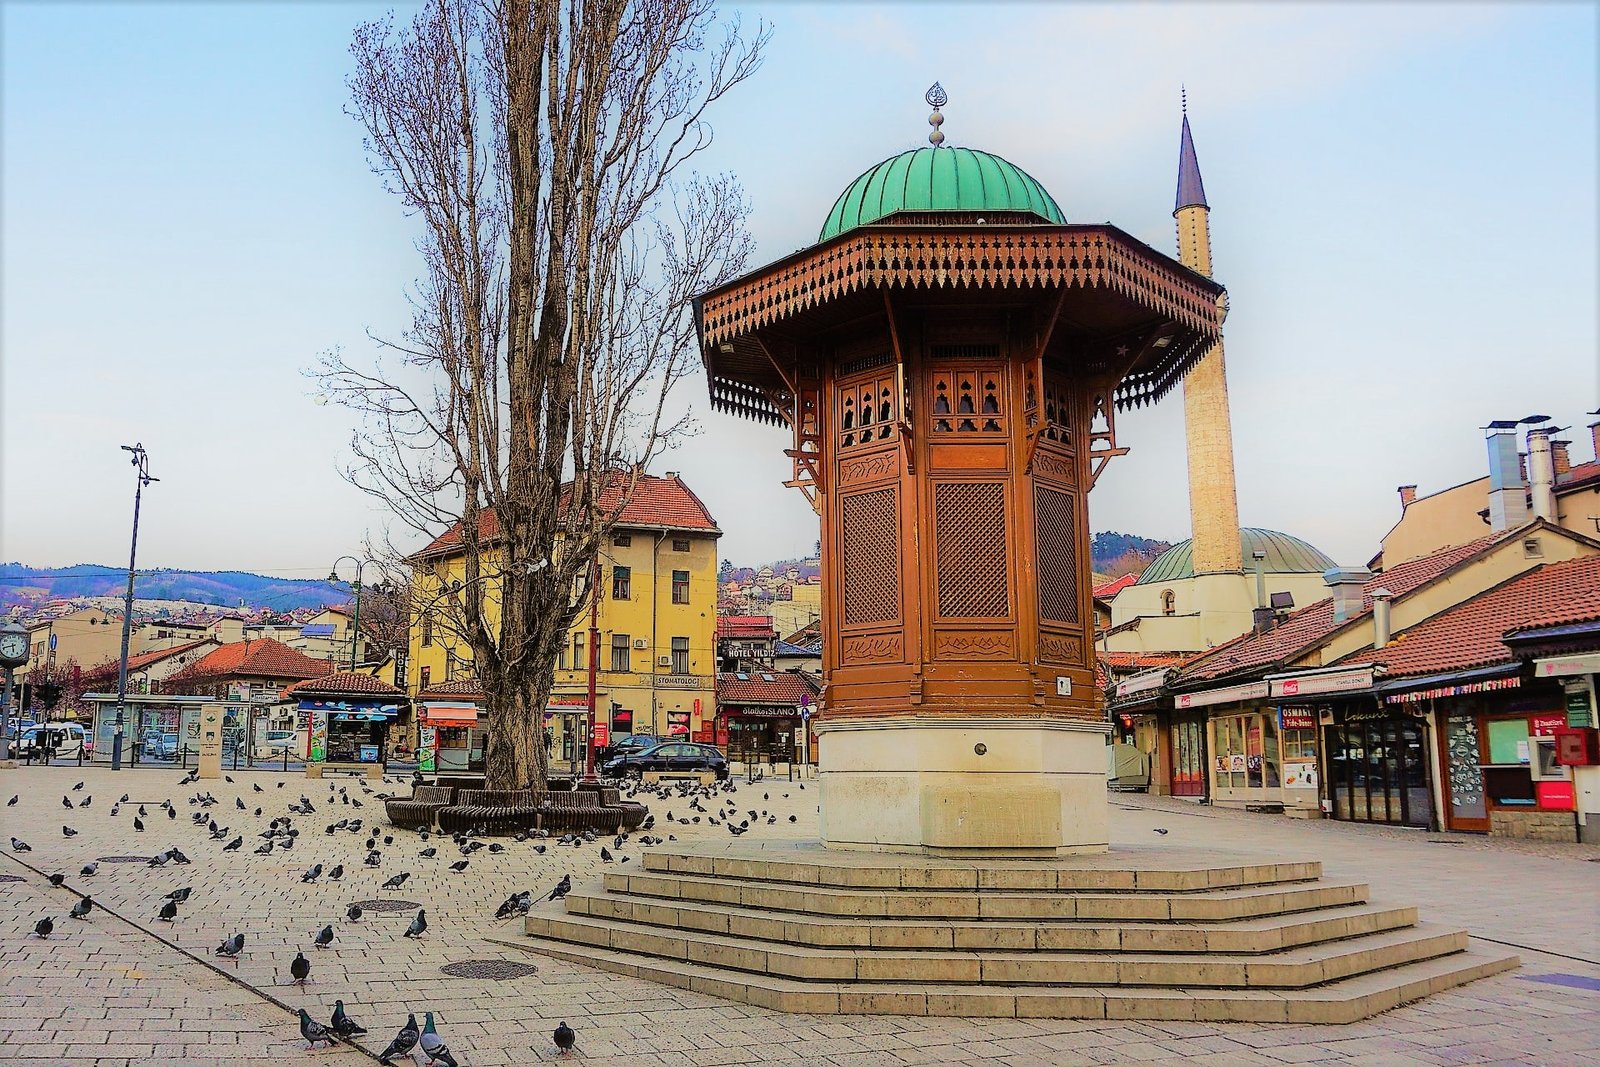 Sebilj - What to see in Sarajevo